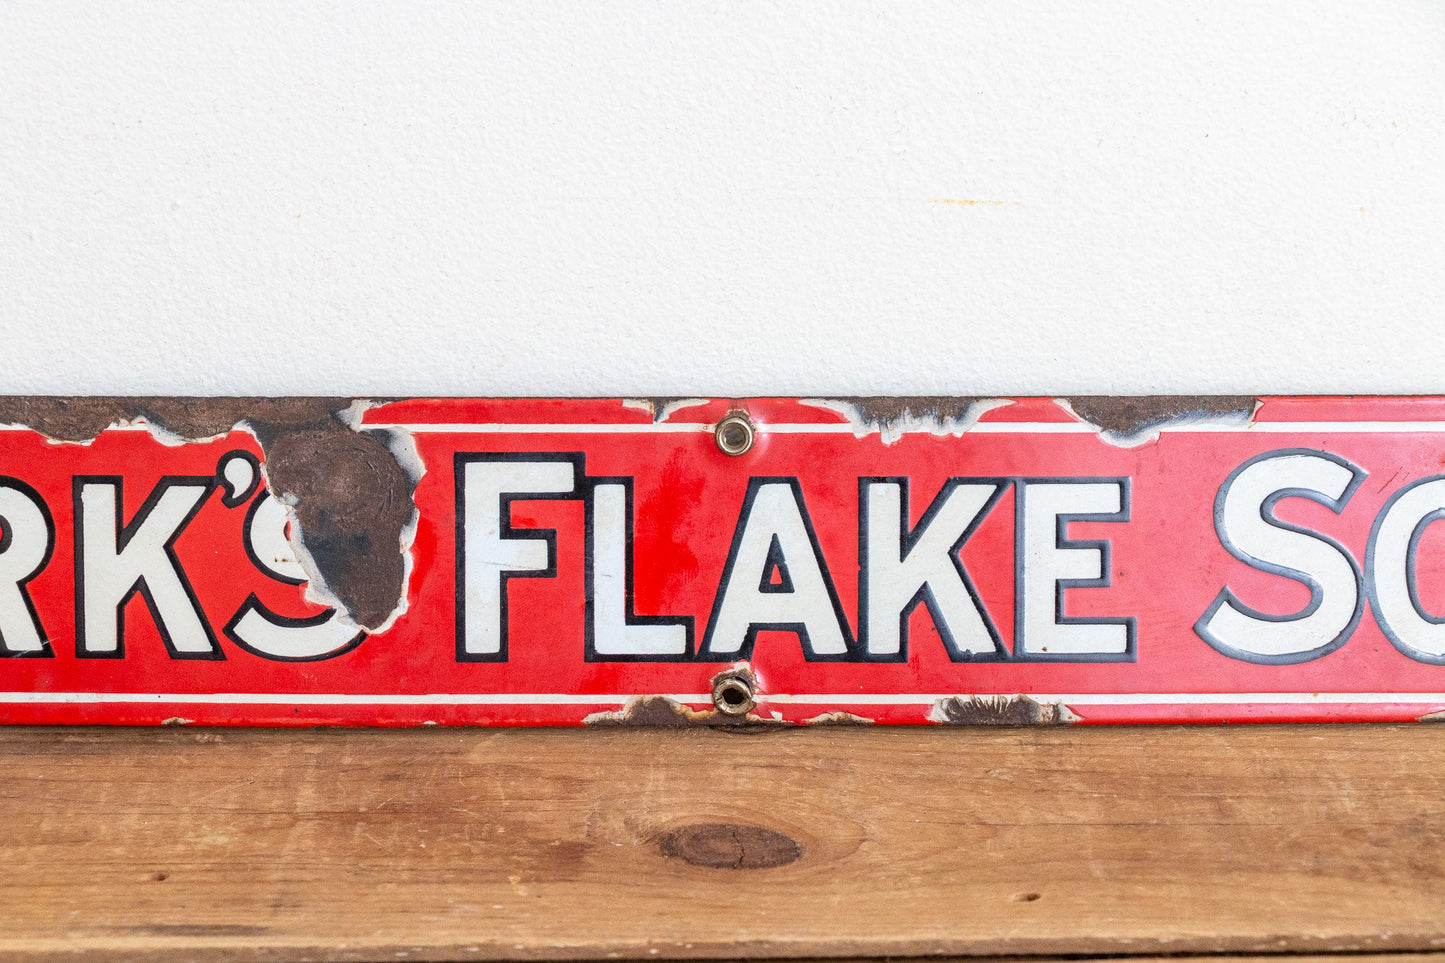 Kirk's Flake Soap Sign Vintage Red Porcelain Bathroom Decor - Eagle's Eye Finds